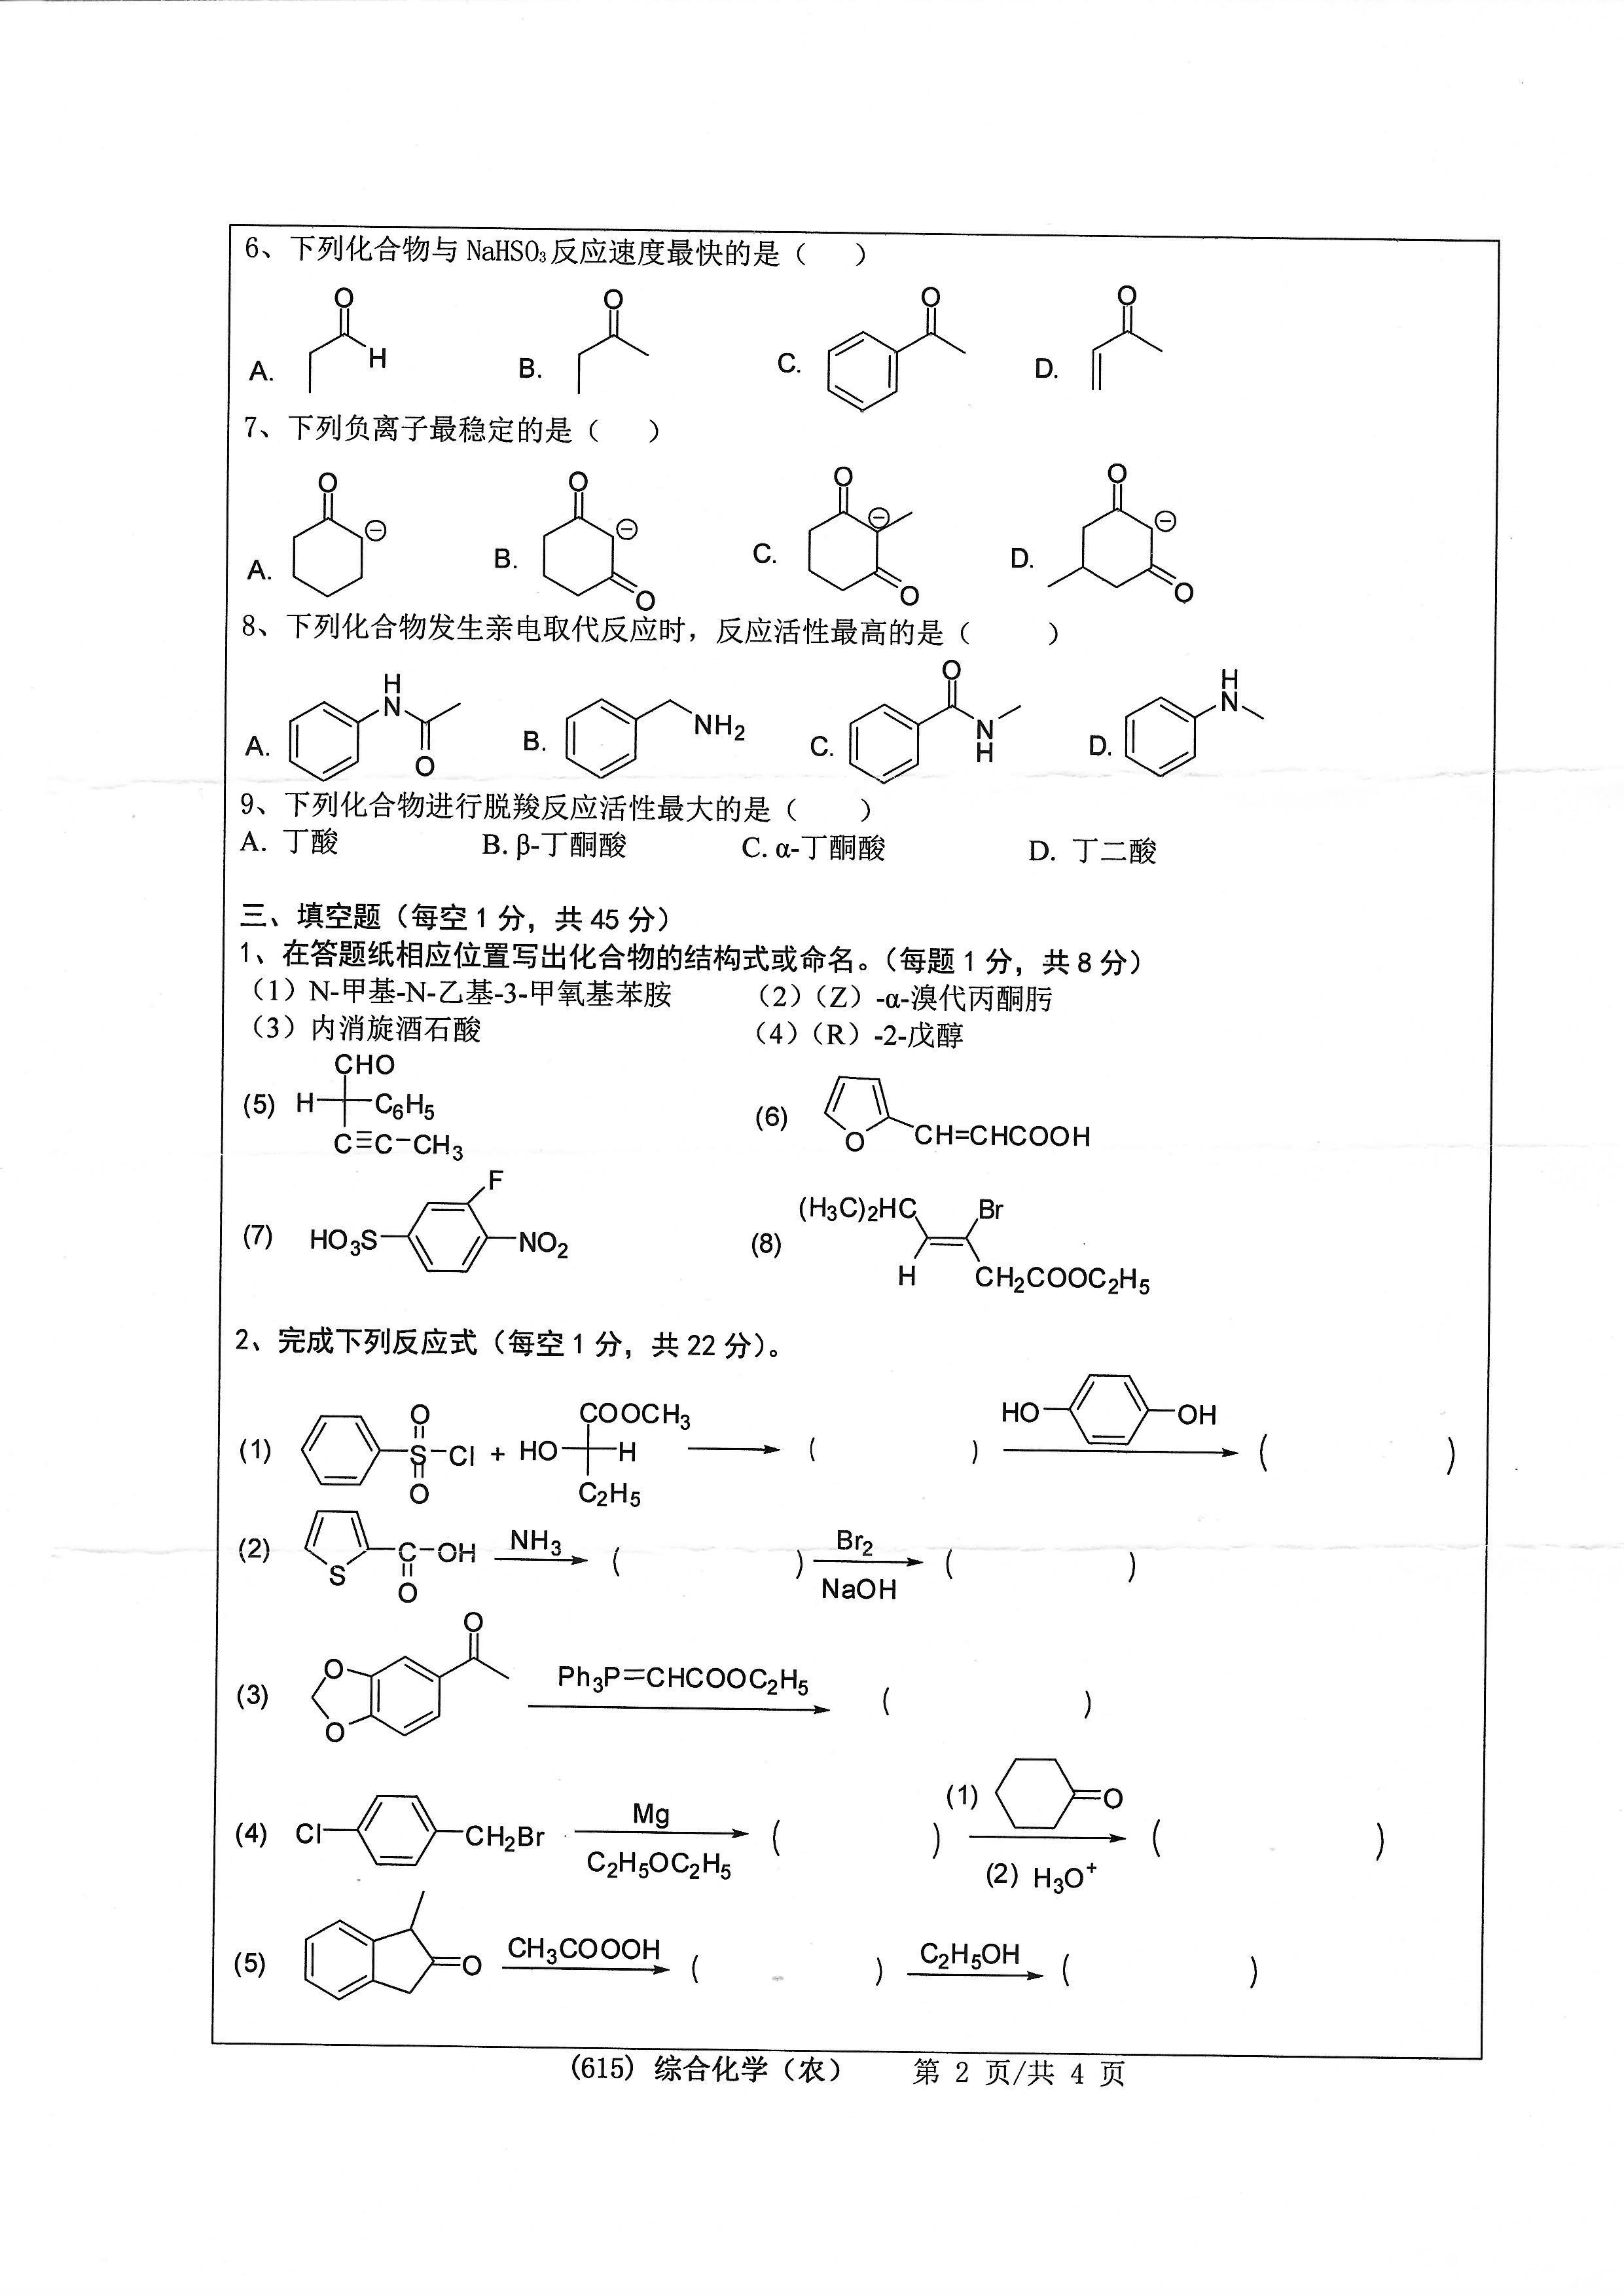 615综合化学（农）2020年考研初试试卷真题（浙江工业大学）